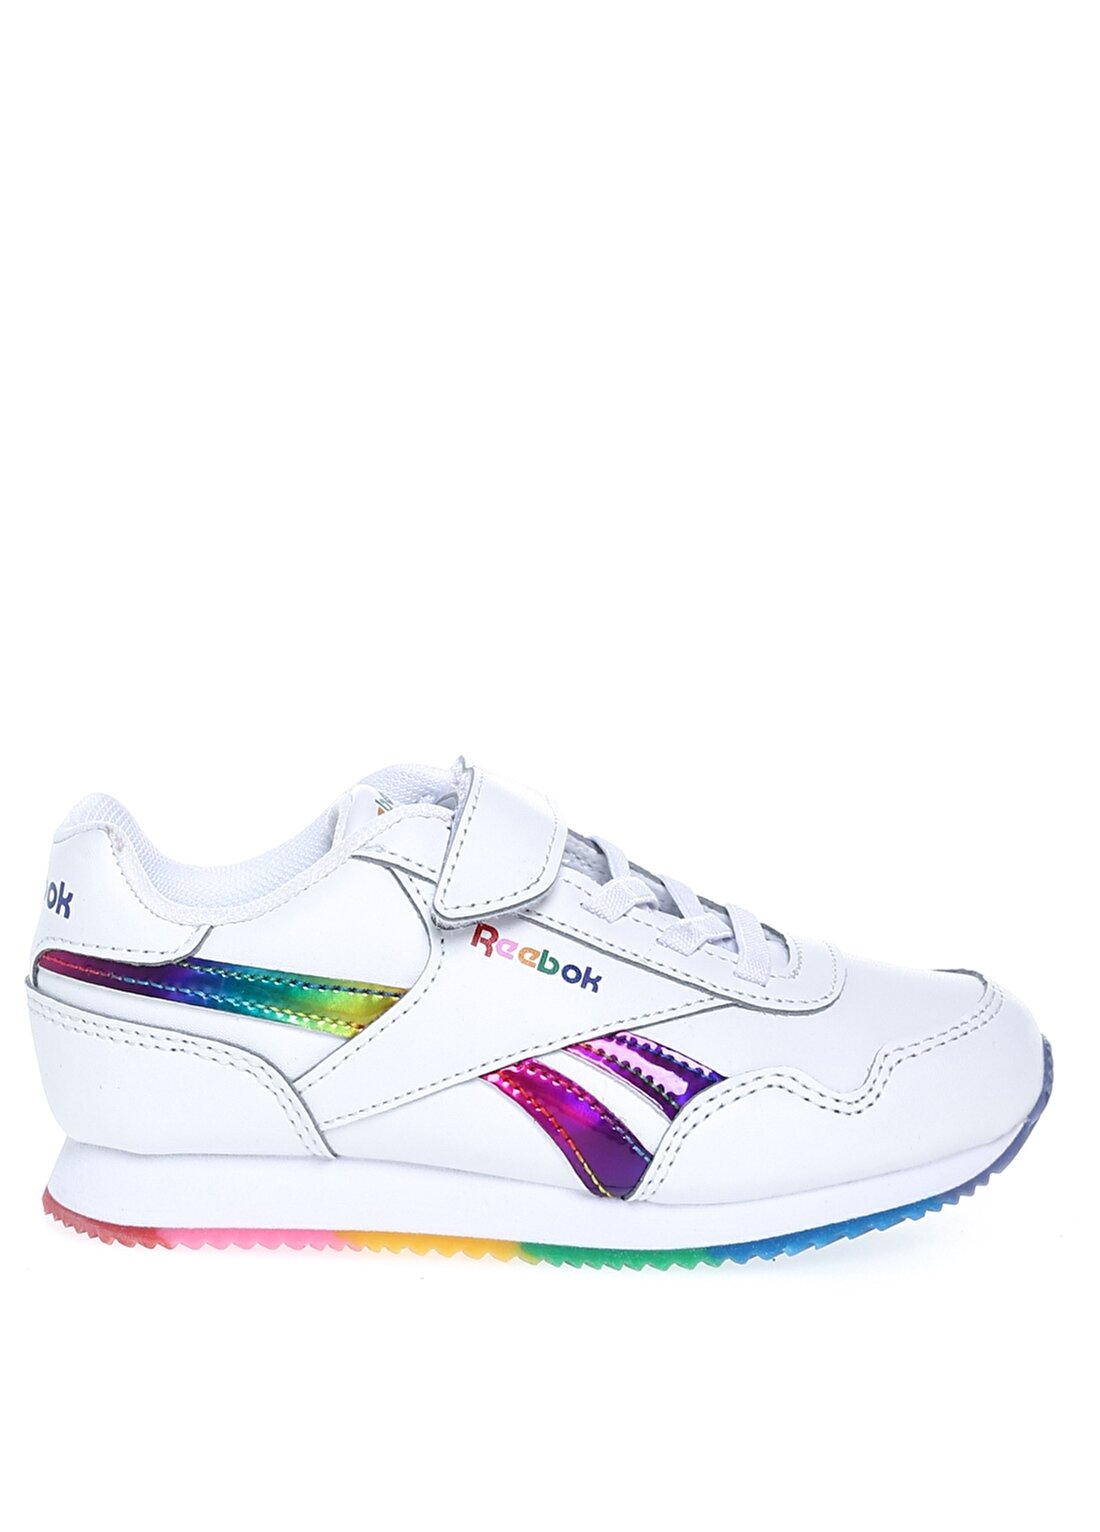 Reebok GY5934 Roya Beyaz Kız Çocuk Yürüyüş Ayakkabısı